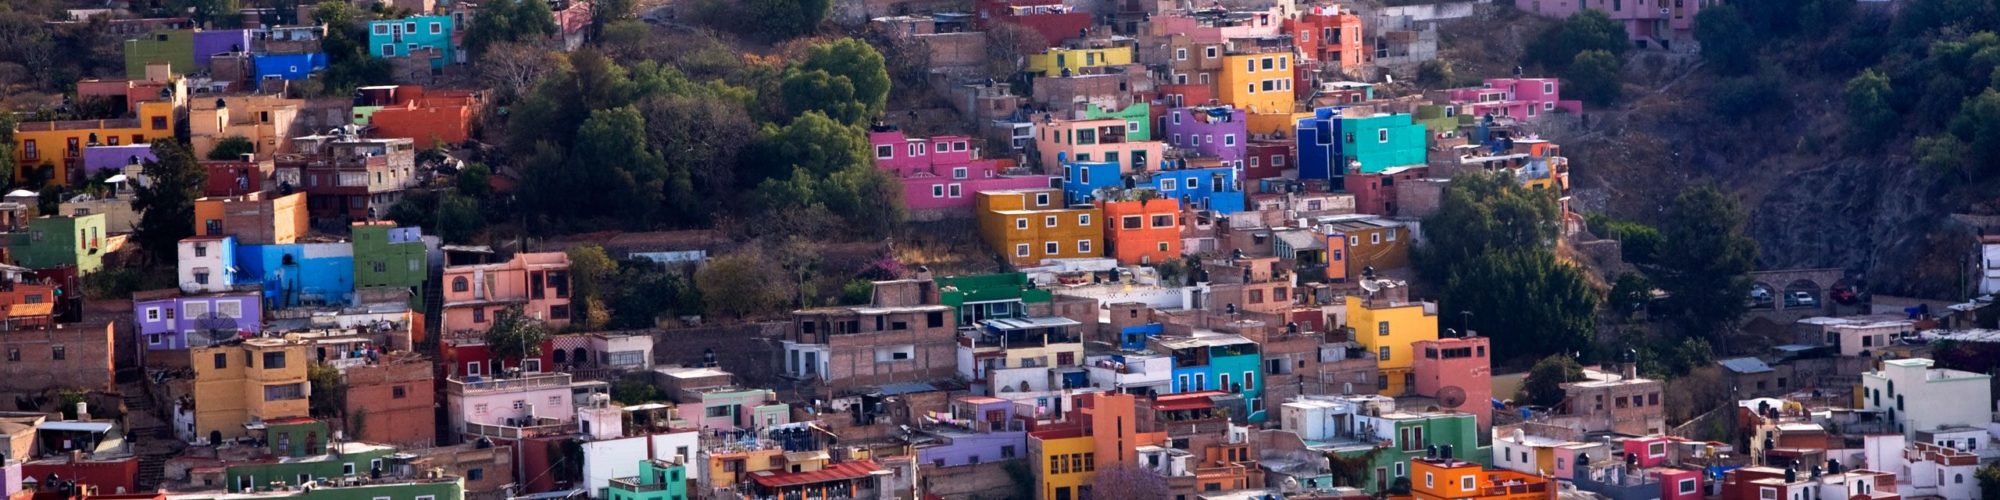 Guanajuato travel agents packages deals